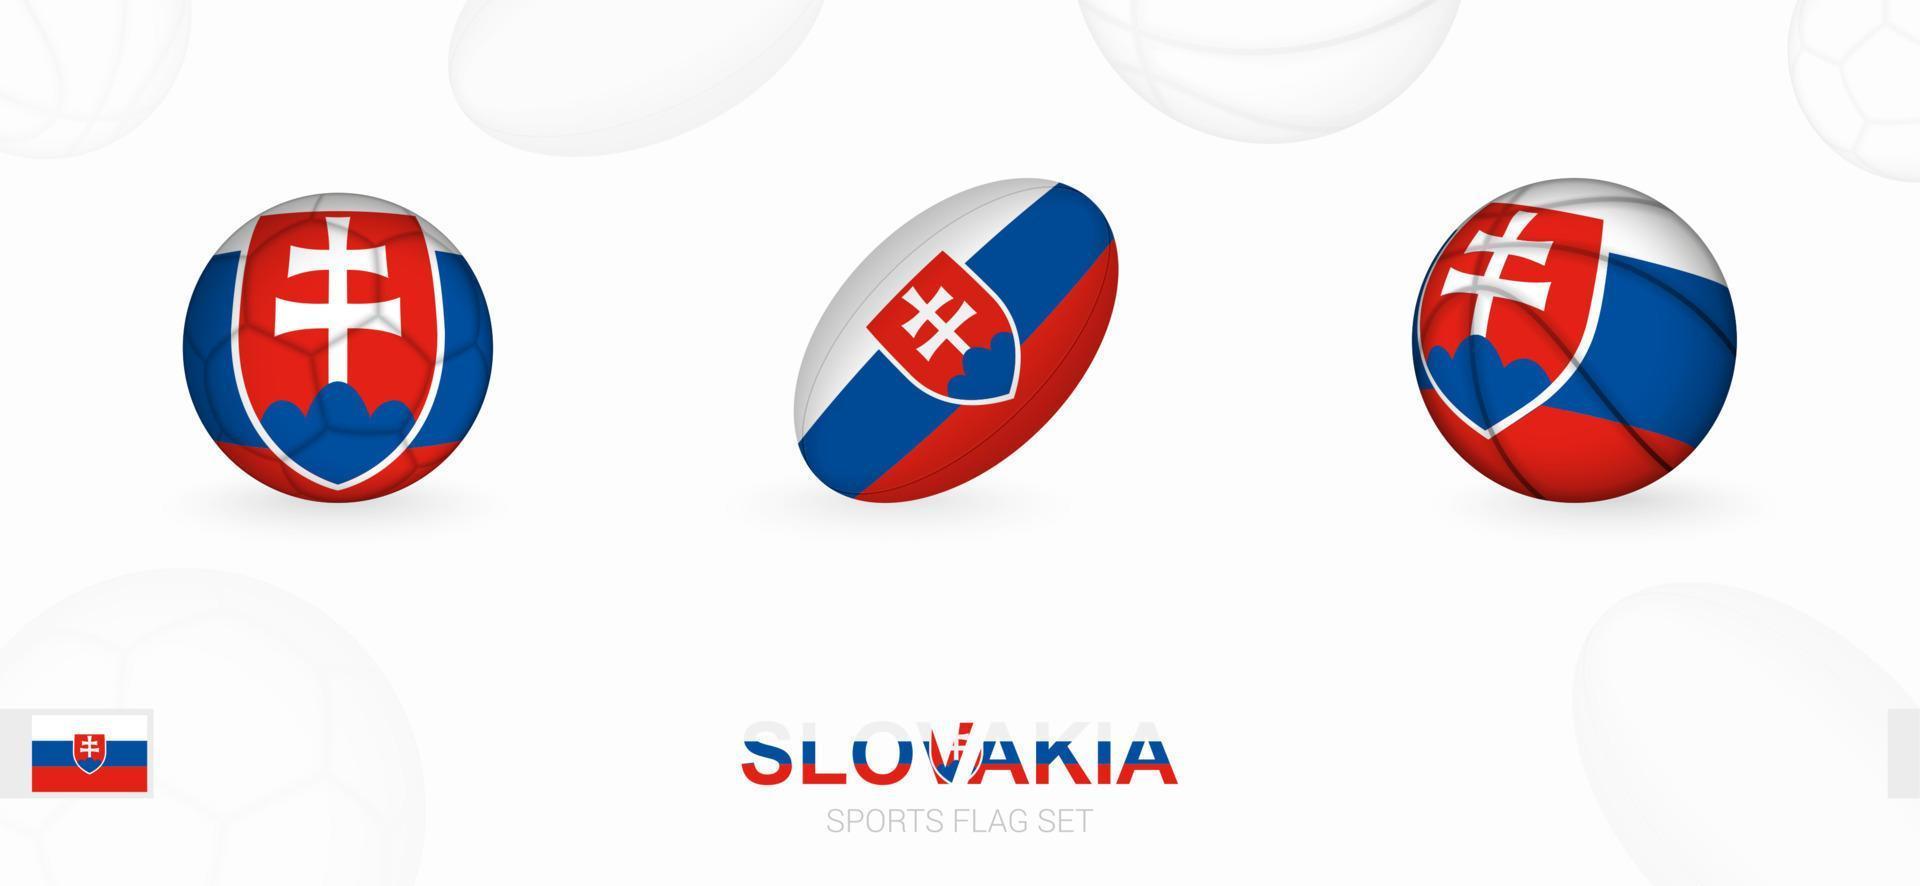 Deportes íconos para fútbol, rugby y baloncesto con el bandera de Eslovaquia. vector